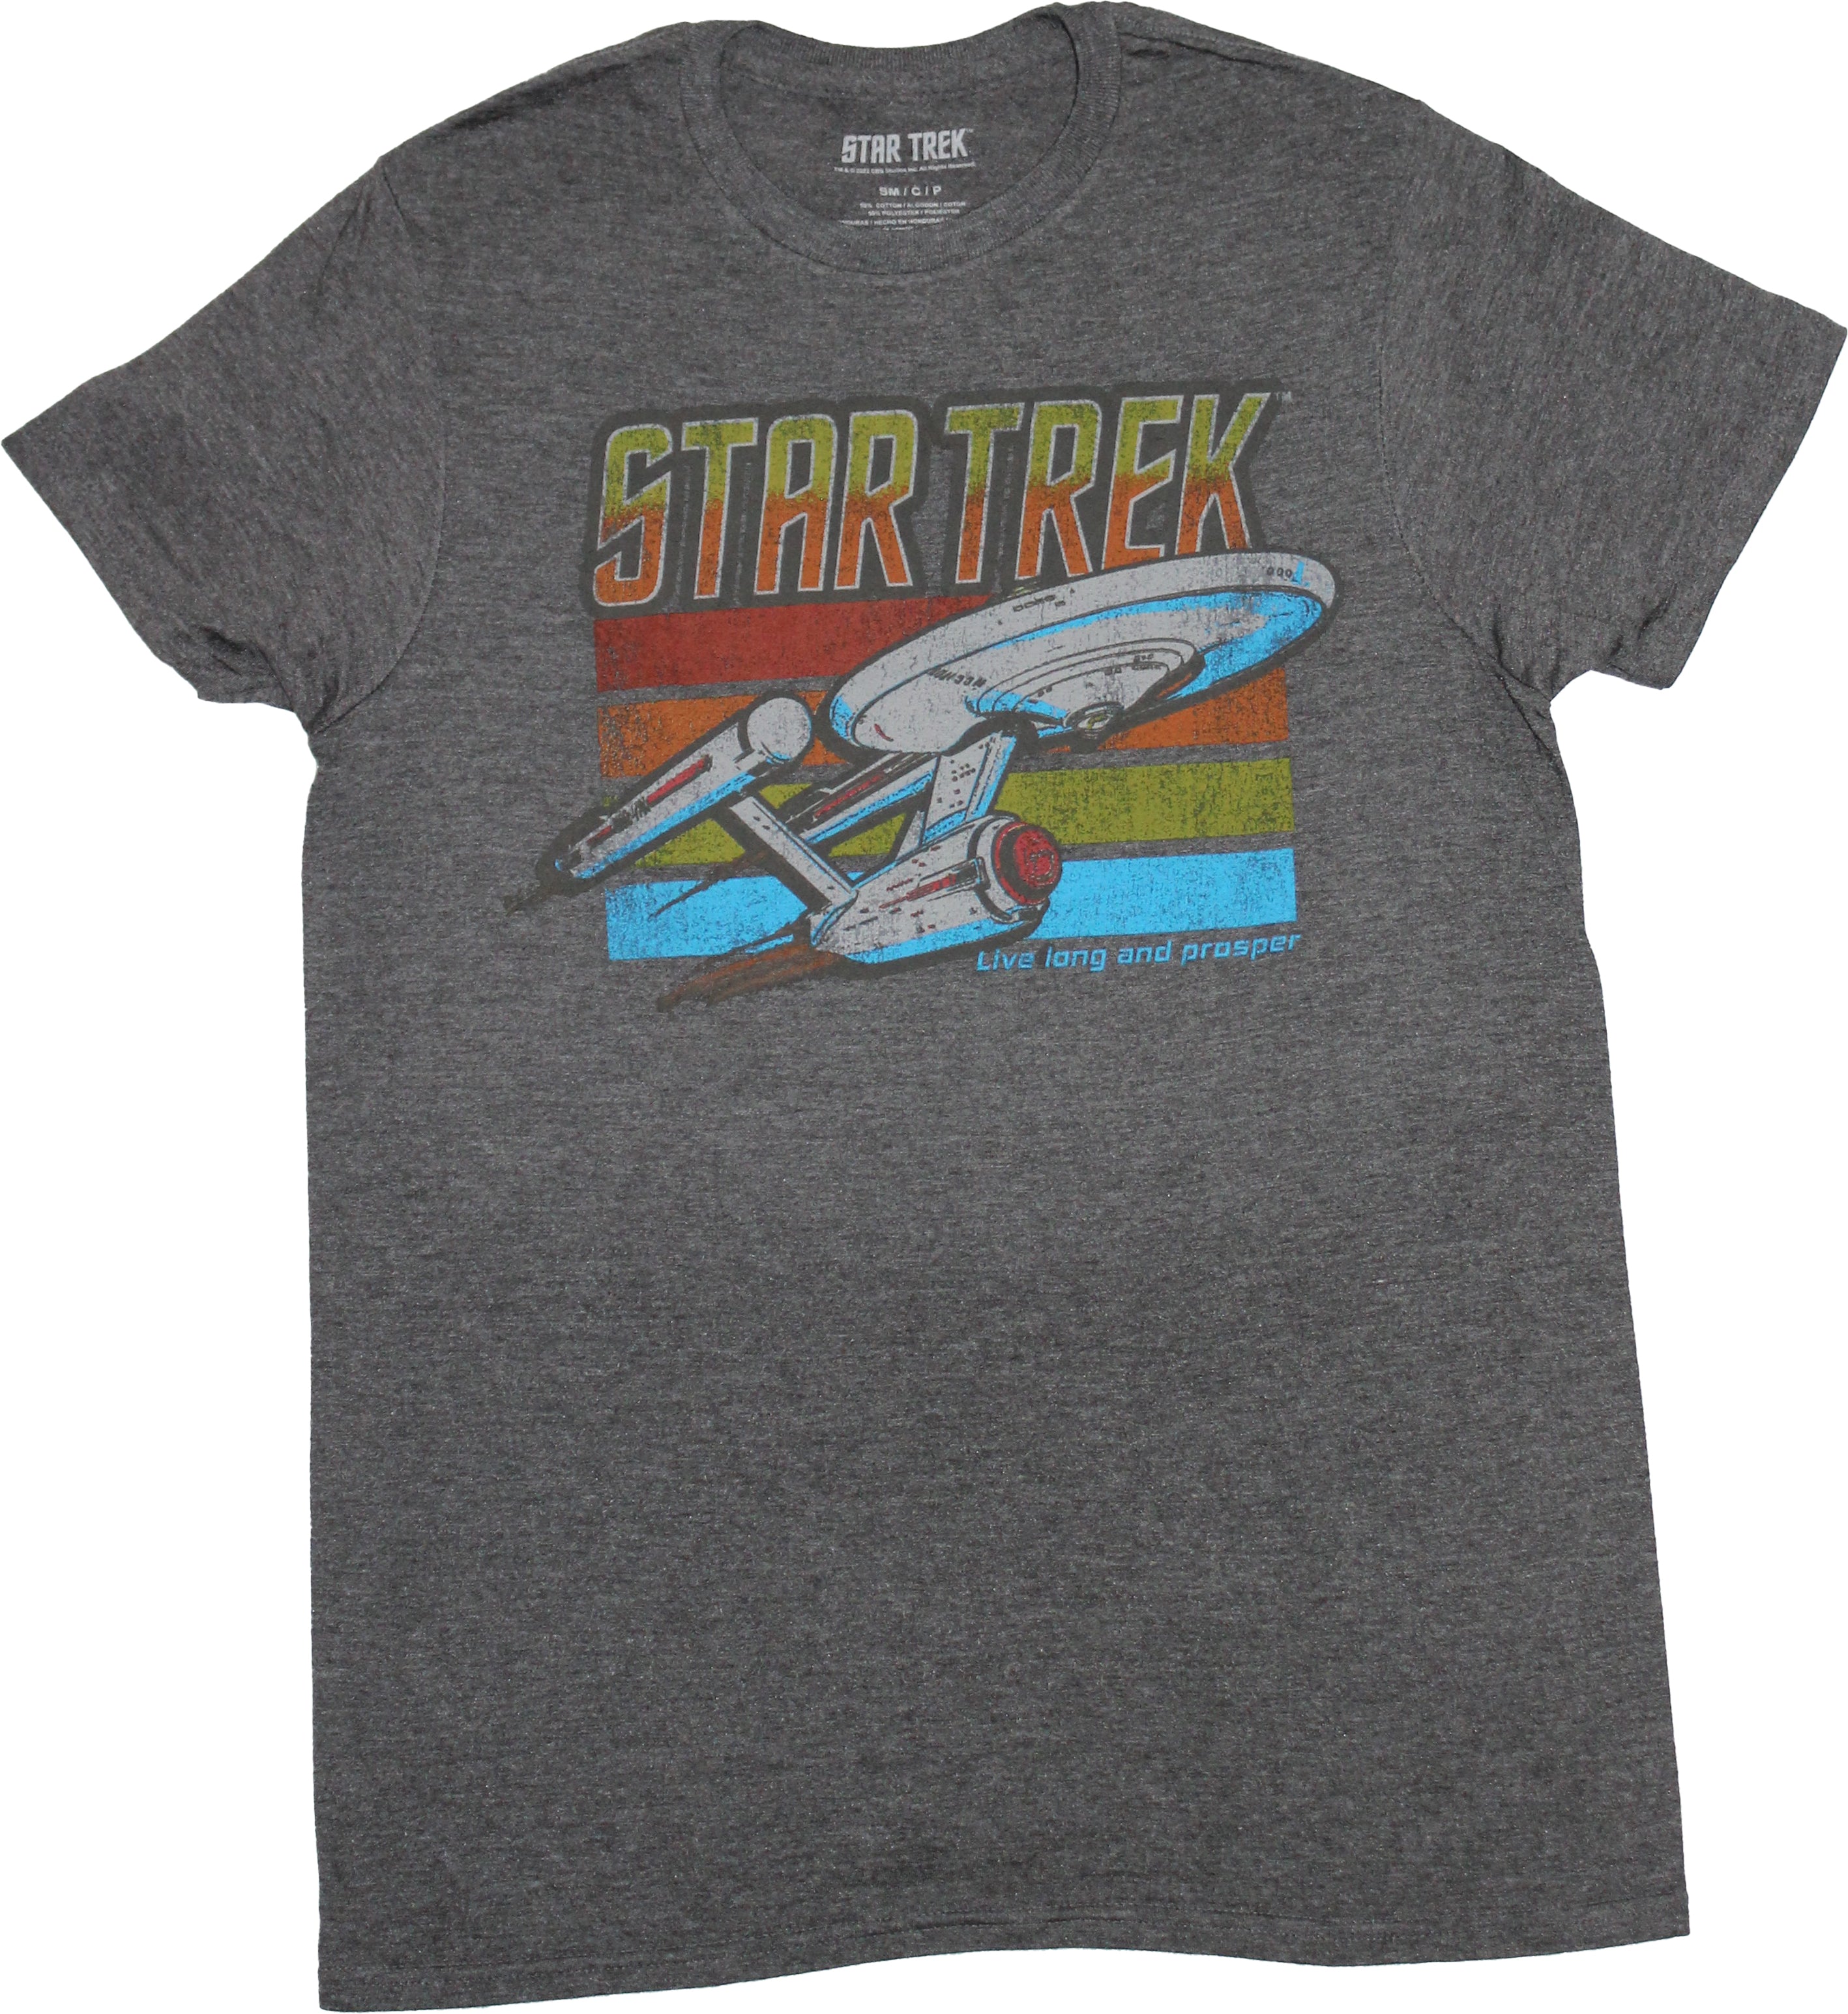 Star Trek Mens T-shirt - U.S.S. Enterprise Under Logo Over Stripes